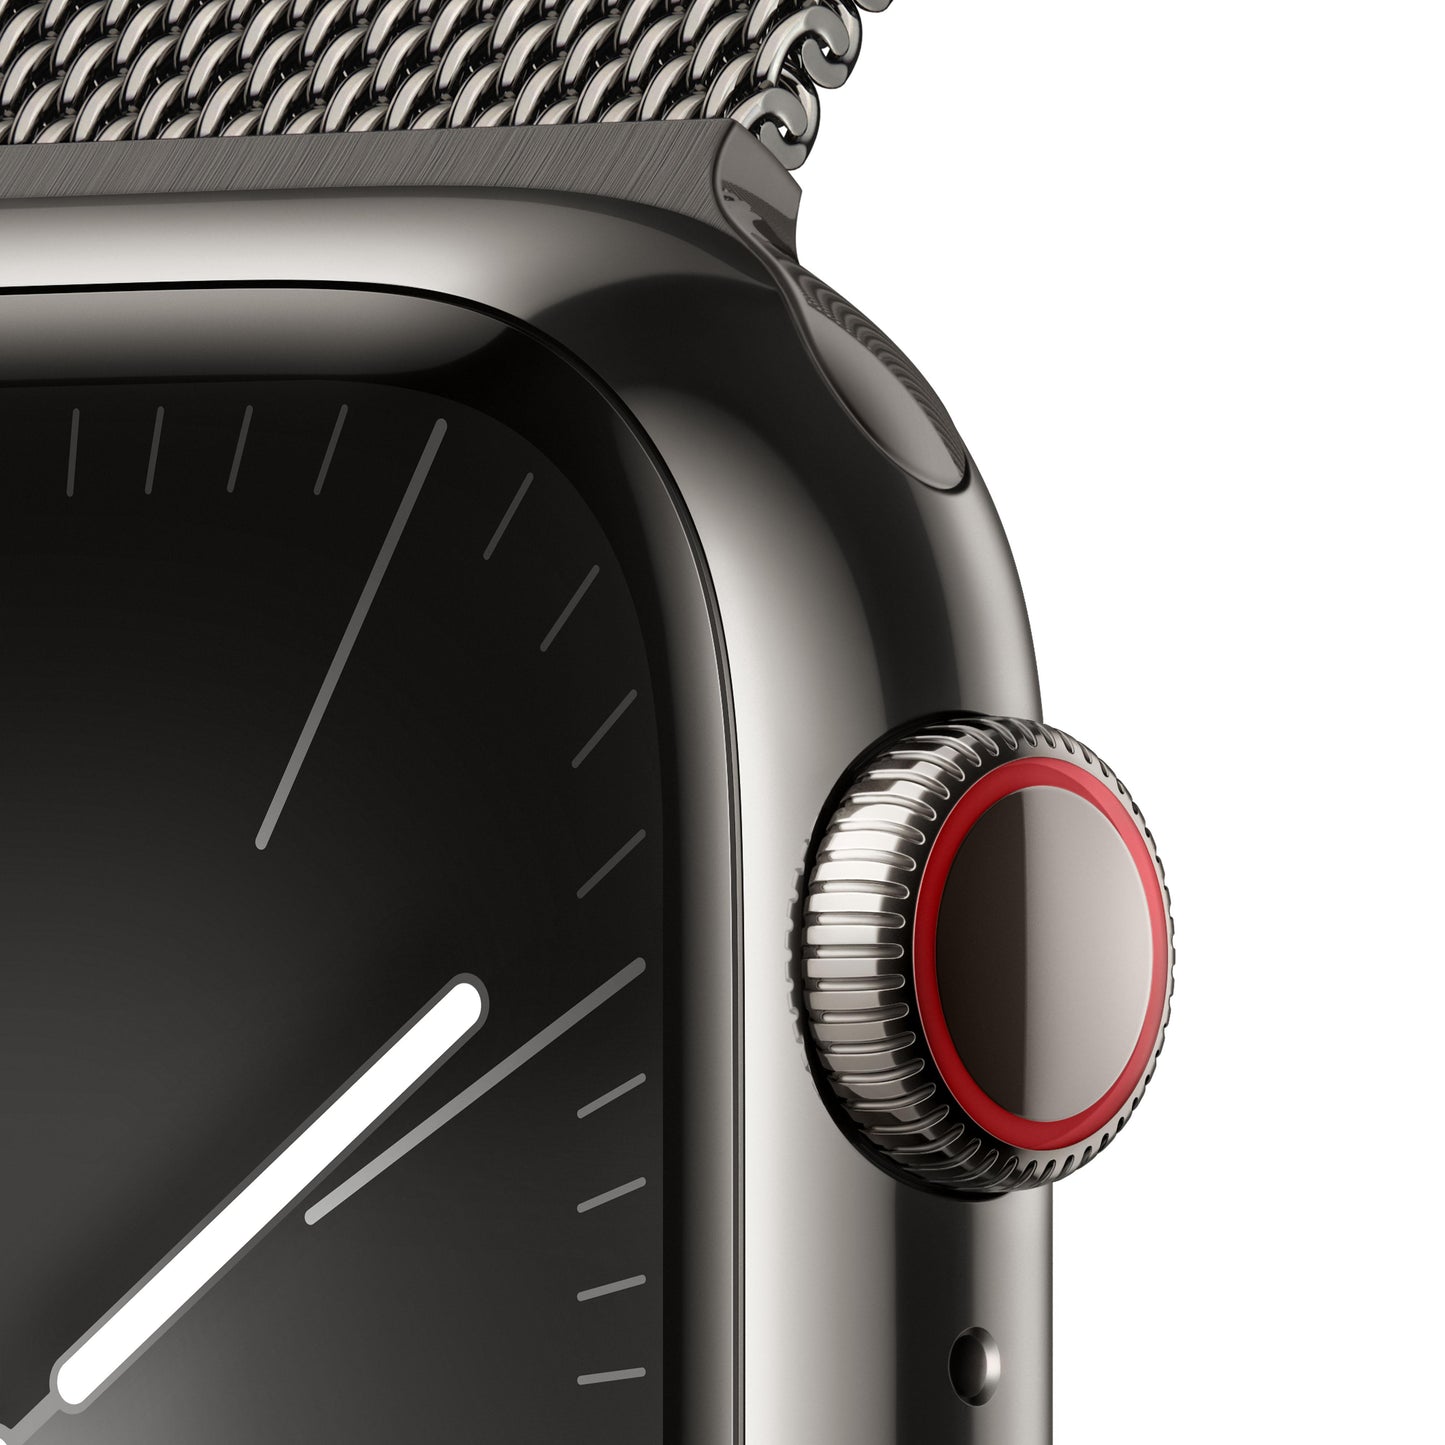 Apple Watch Series 9 (GPS + Cellular) - Caja de acero inoxidable en grafito de 41 mm - Pulsera Milanese Loop en grafito